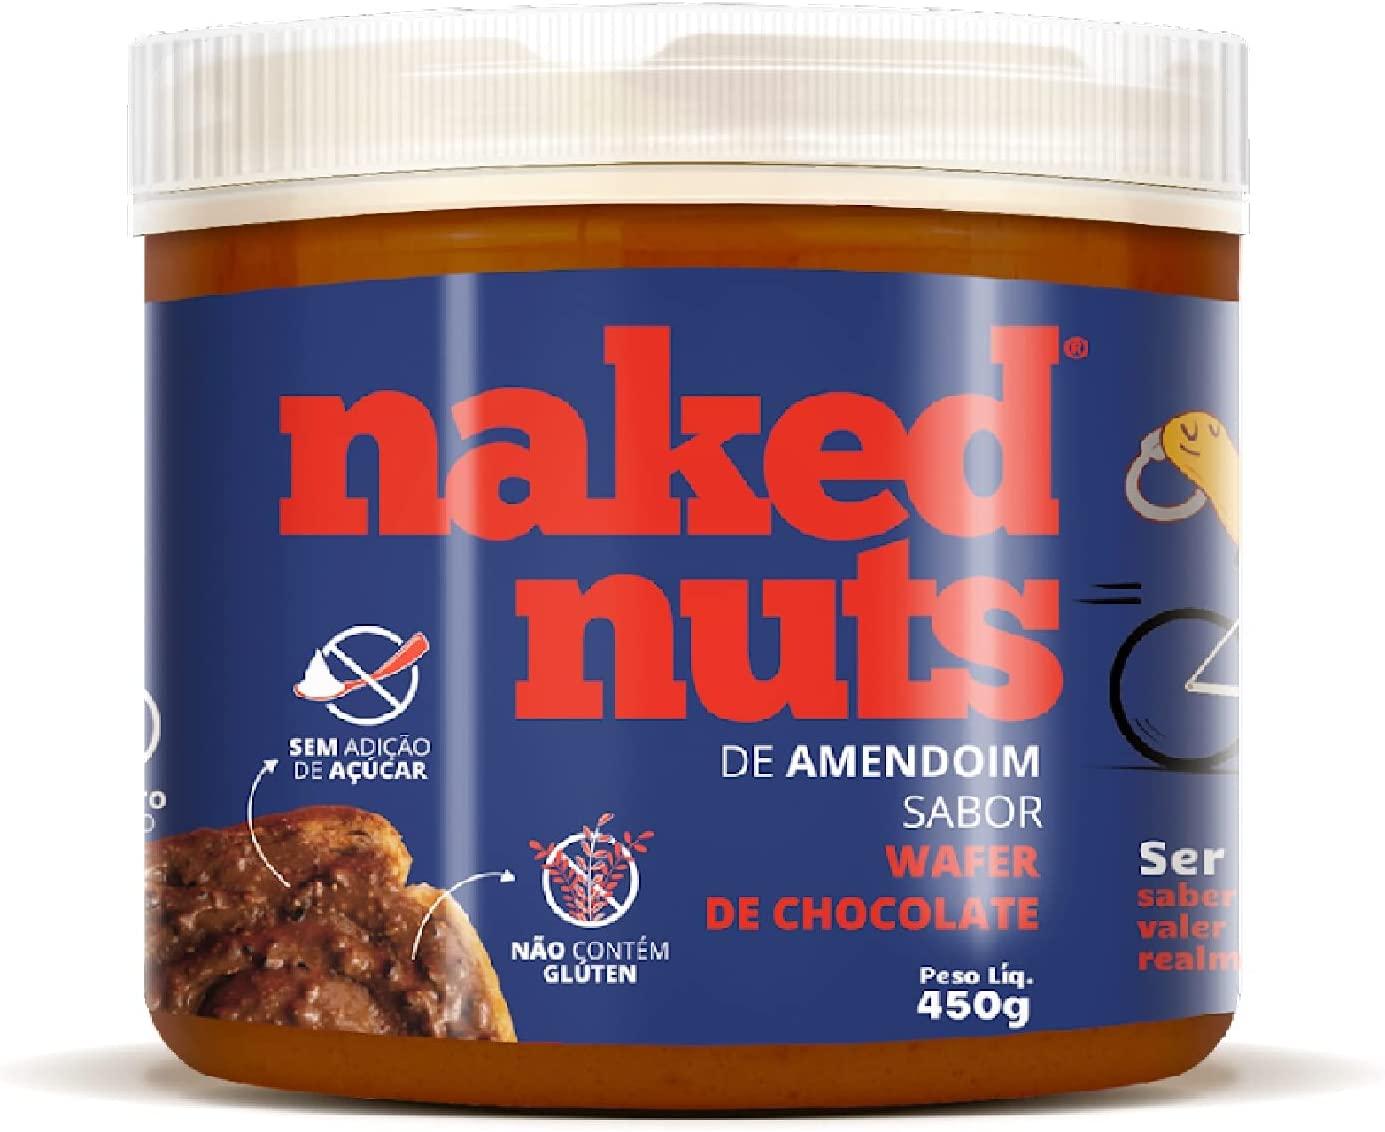 pasta-de-amendoim-com-wafer-de-chocolate-450g-naked-nuts - Imagem